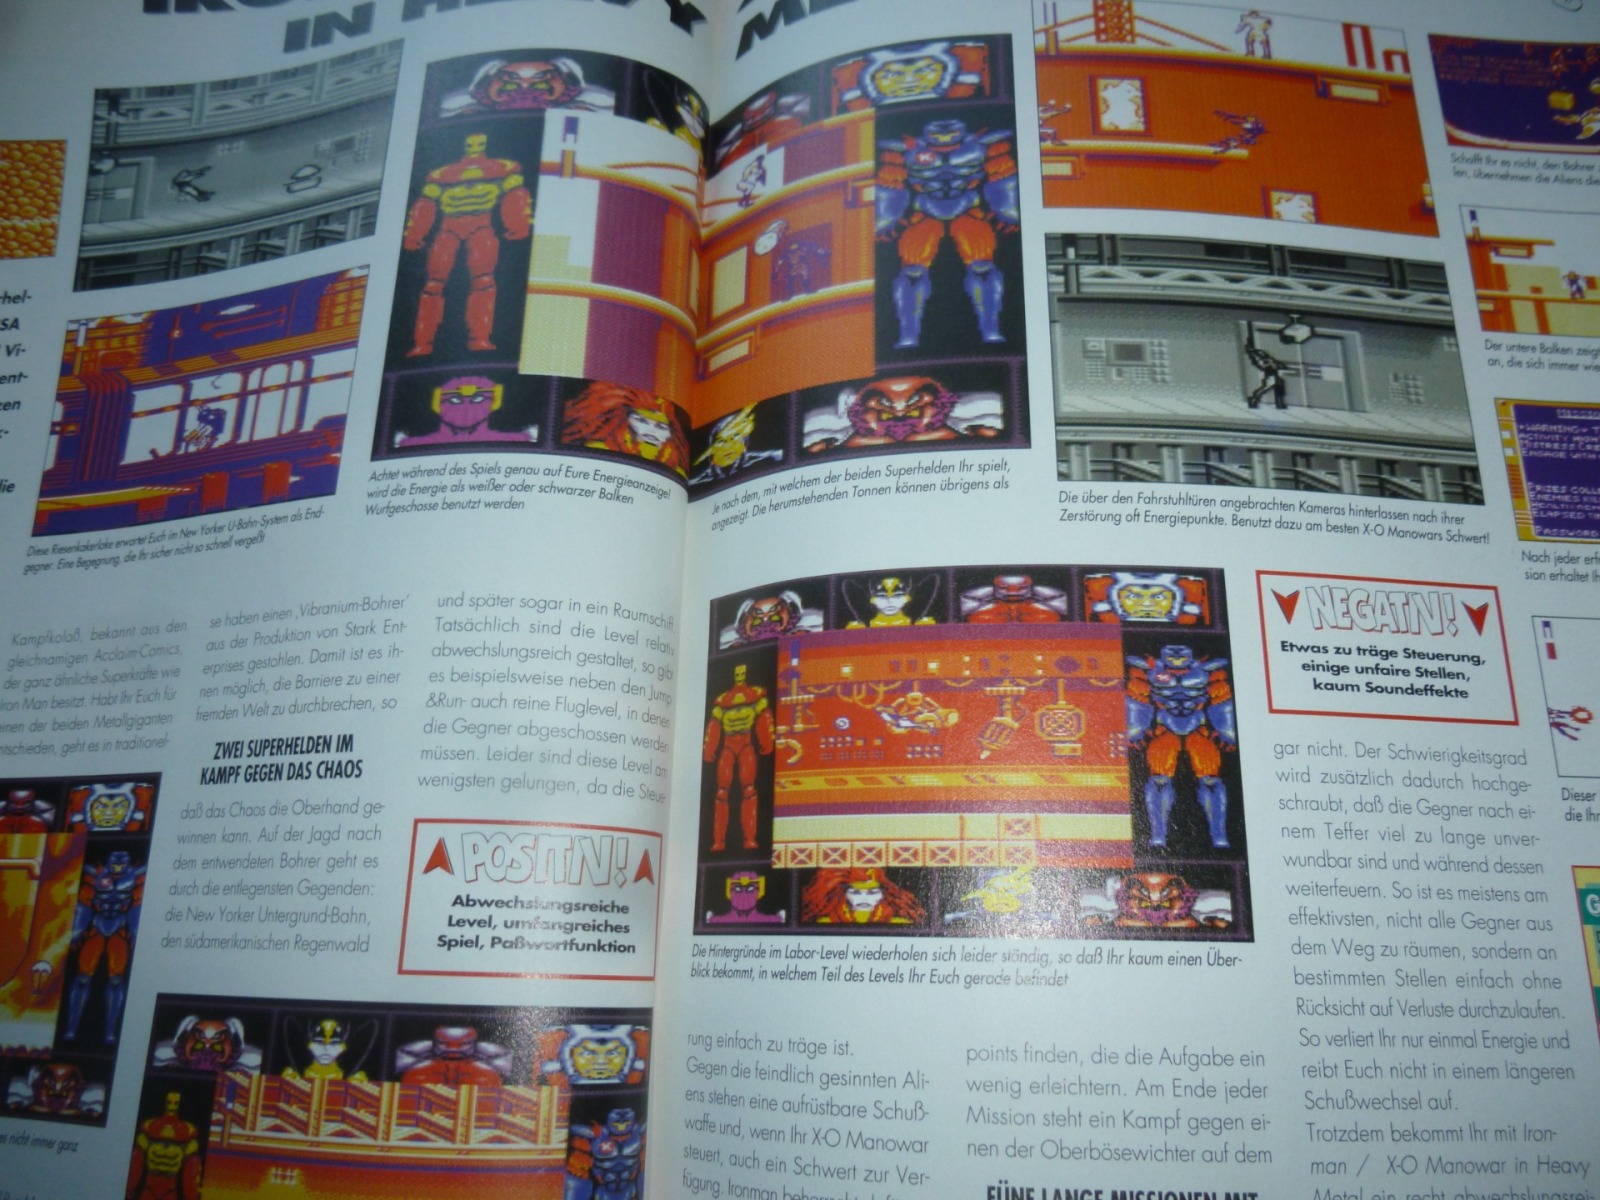 TOTAL Das unabhängige Magazin - 100 Nintendo - Ausgabe 10/96 1996 20